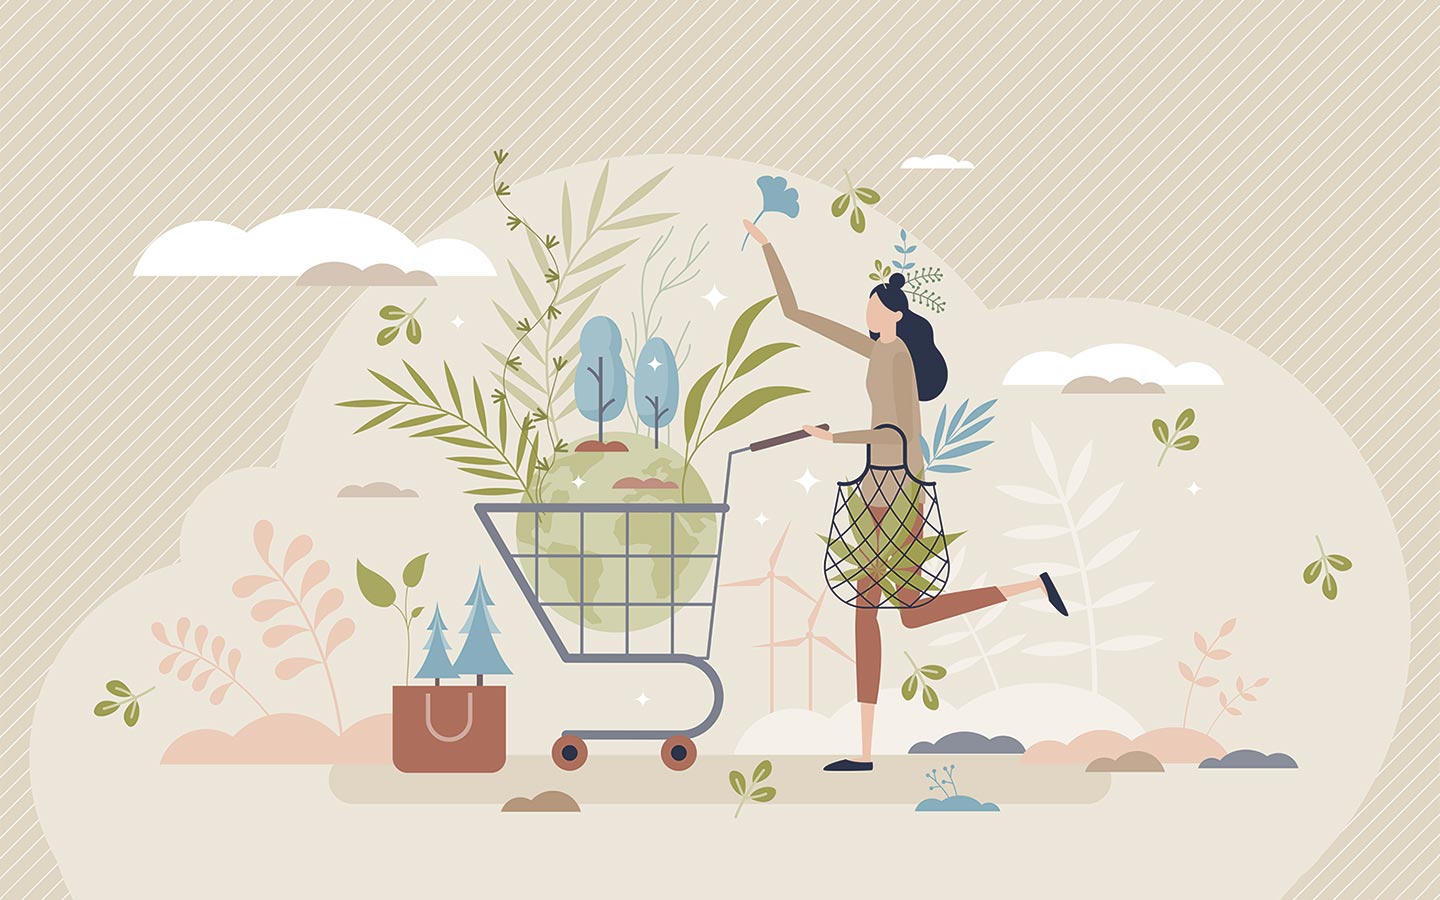 Illustrazione che mostra le scelte sostenibili dei consumatori durante gli acquisti